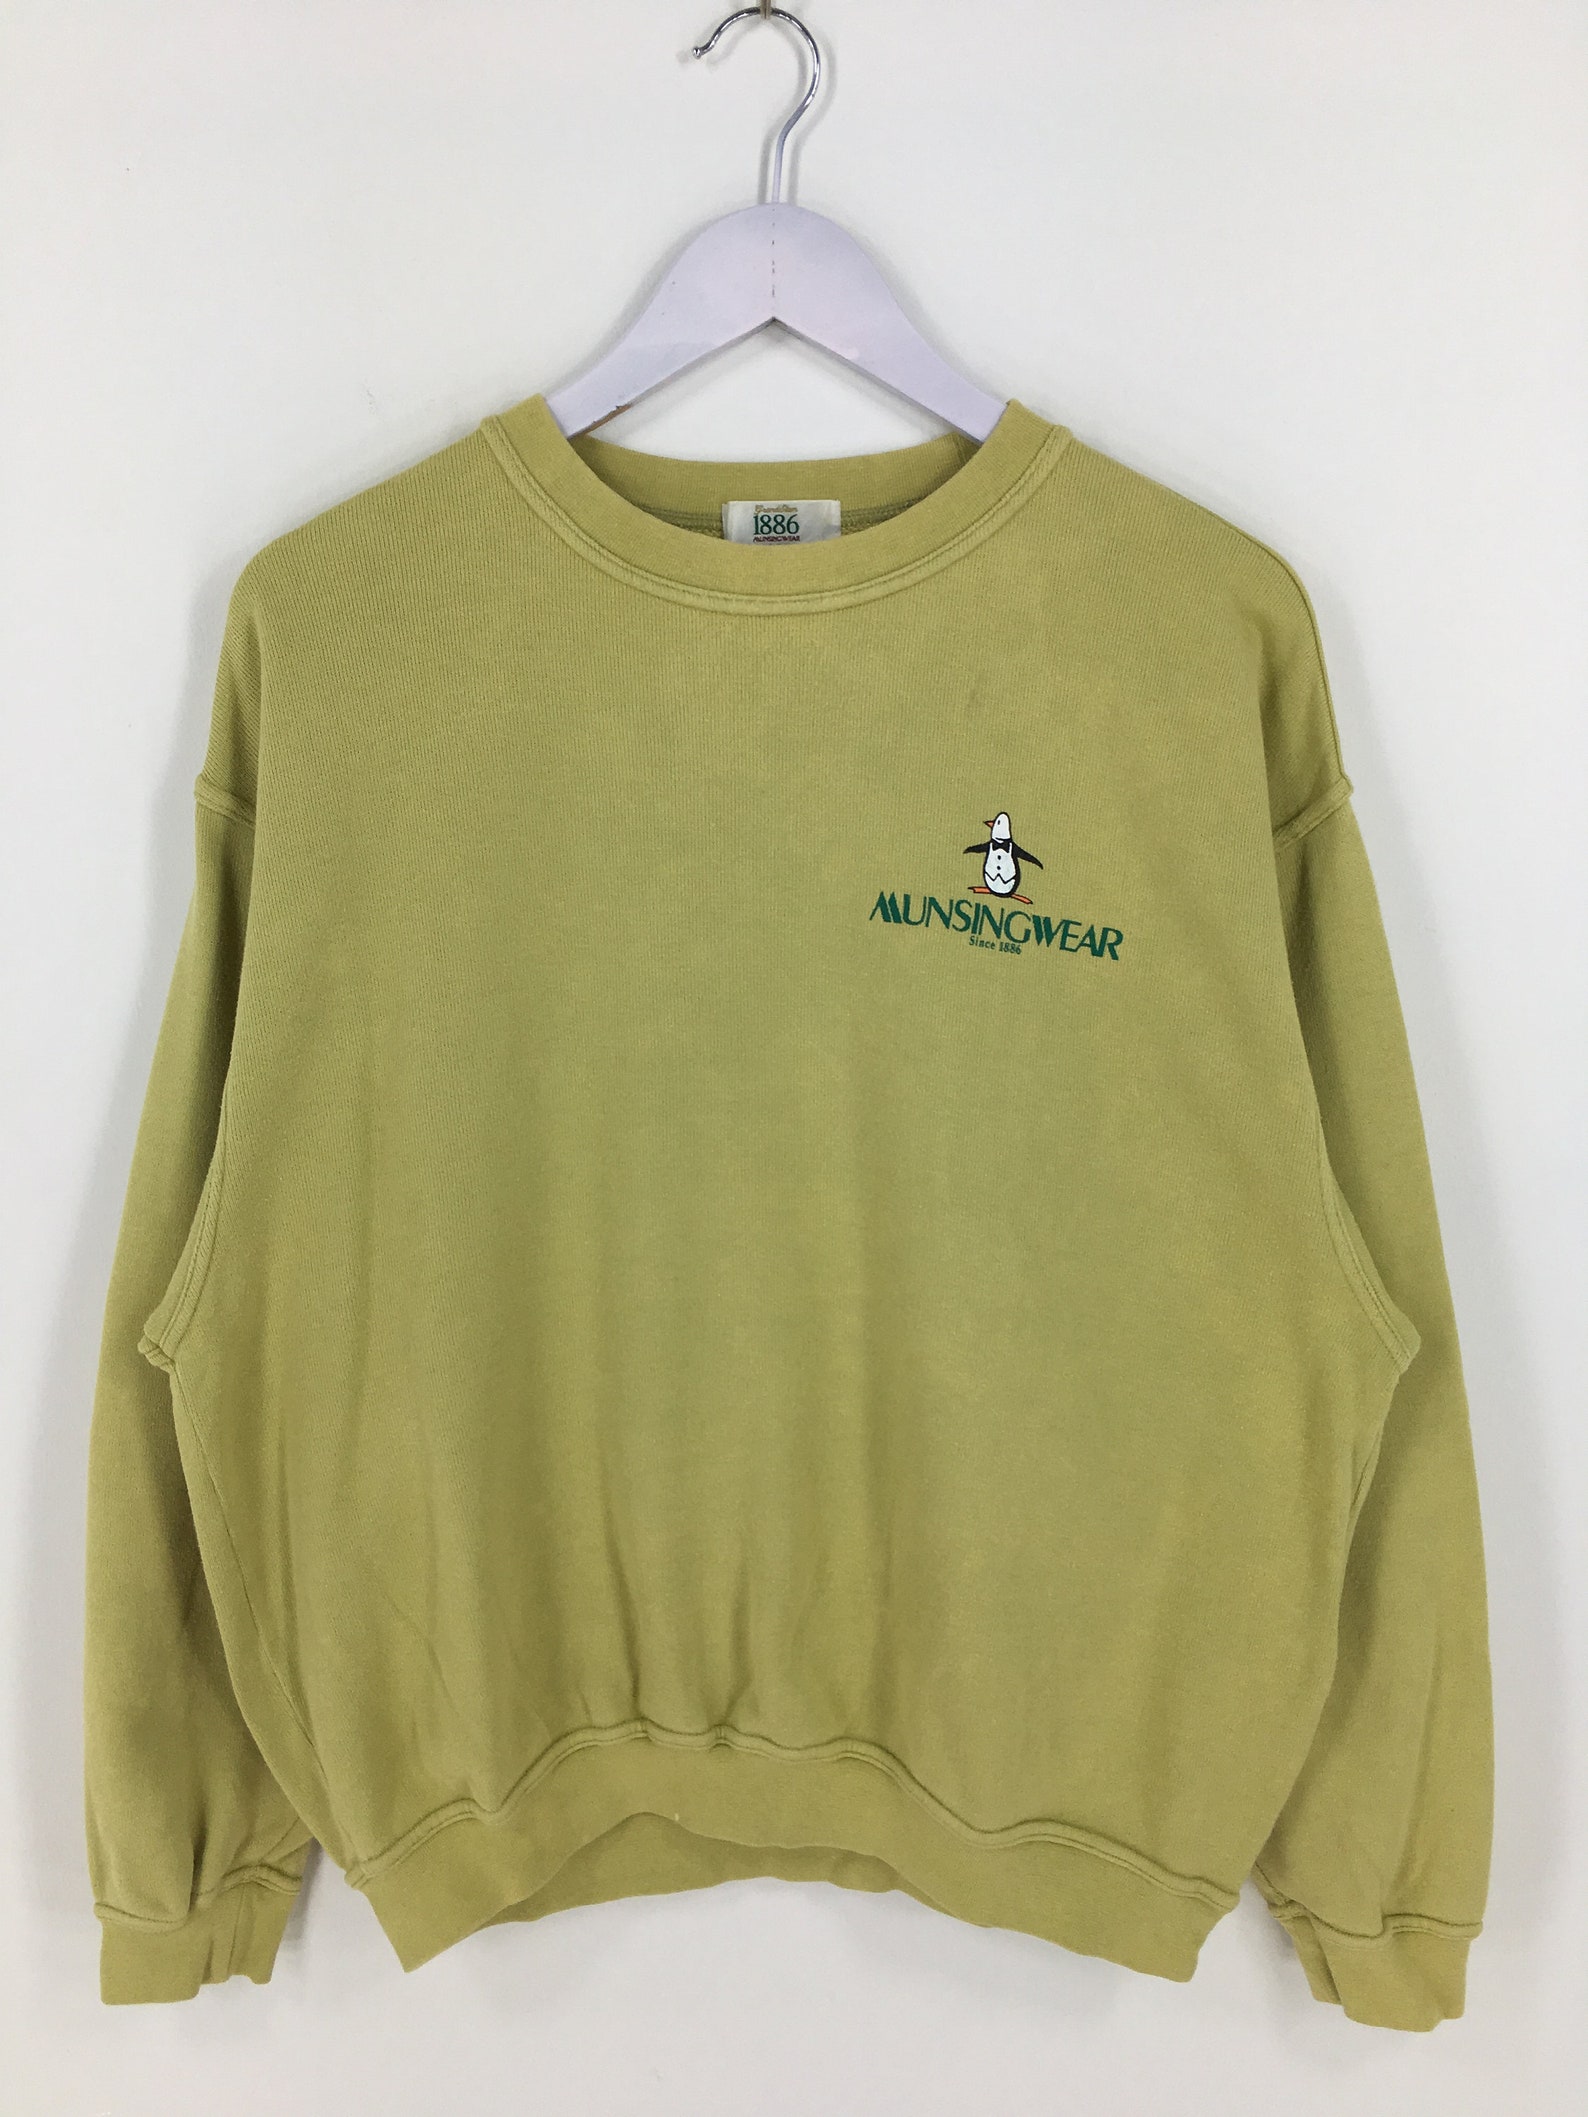 Munsingwear Knitwear Sweatshirt Large Vintage 90's | Etsy